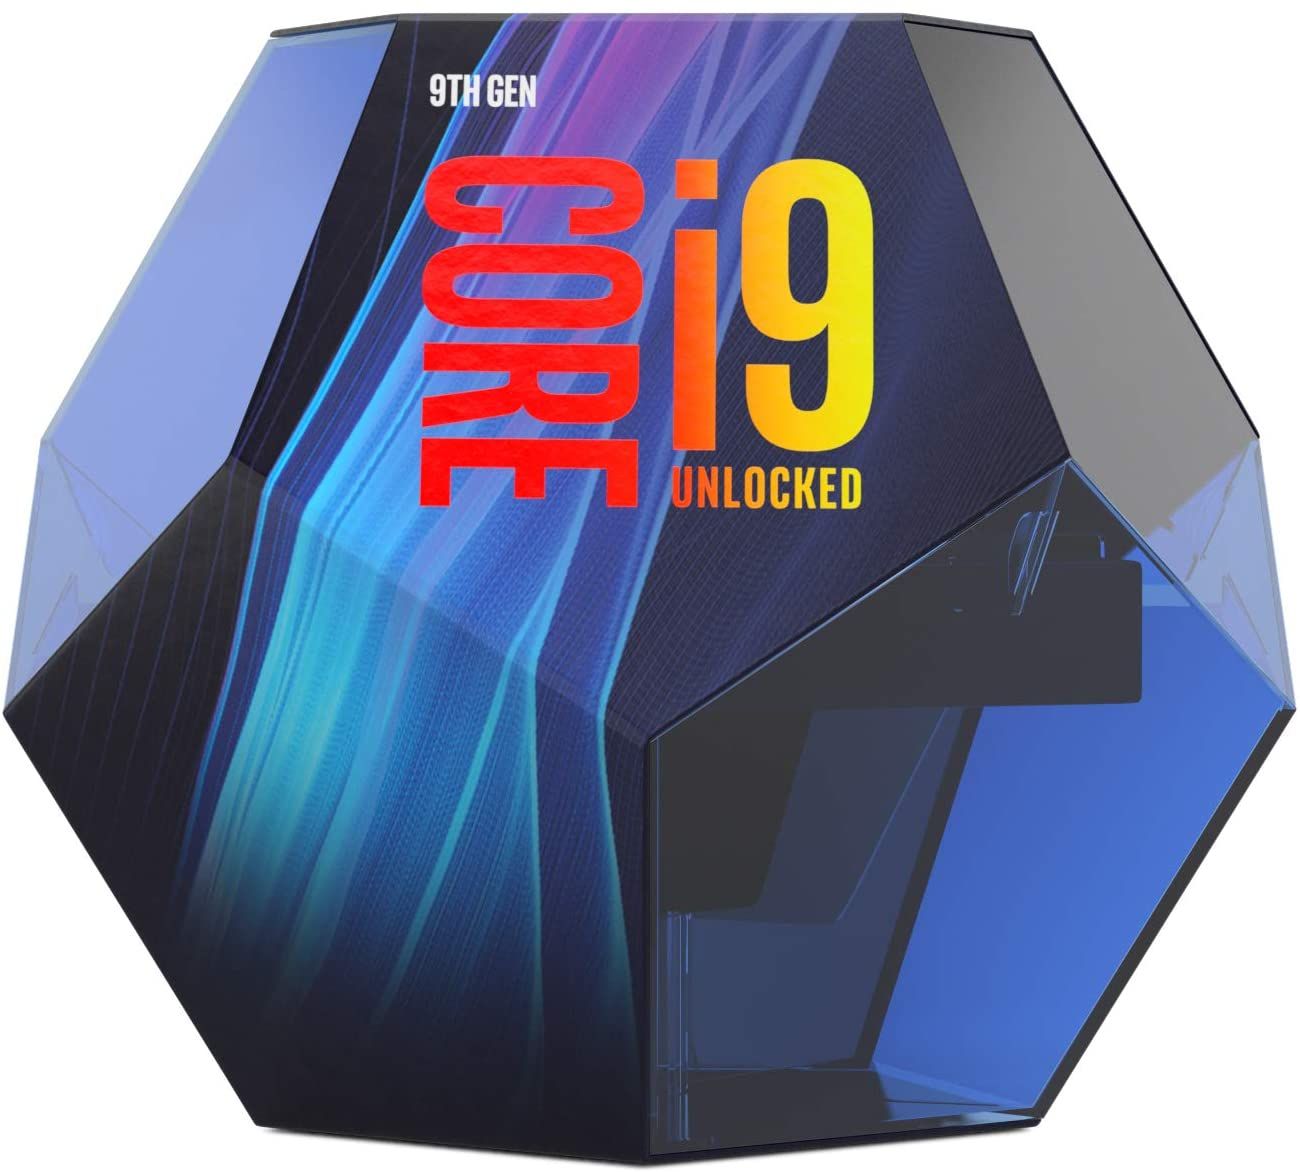 Intel Core i9-9900K Desktop Processor a